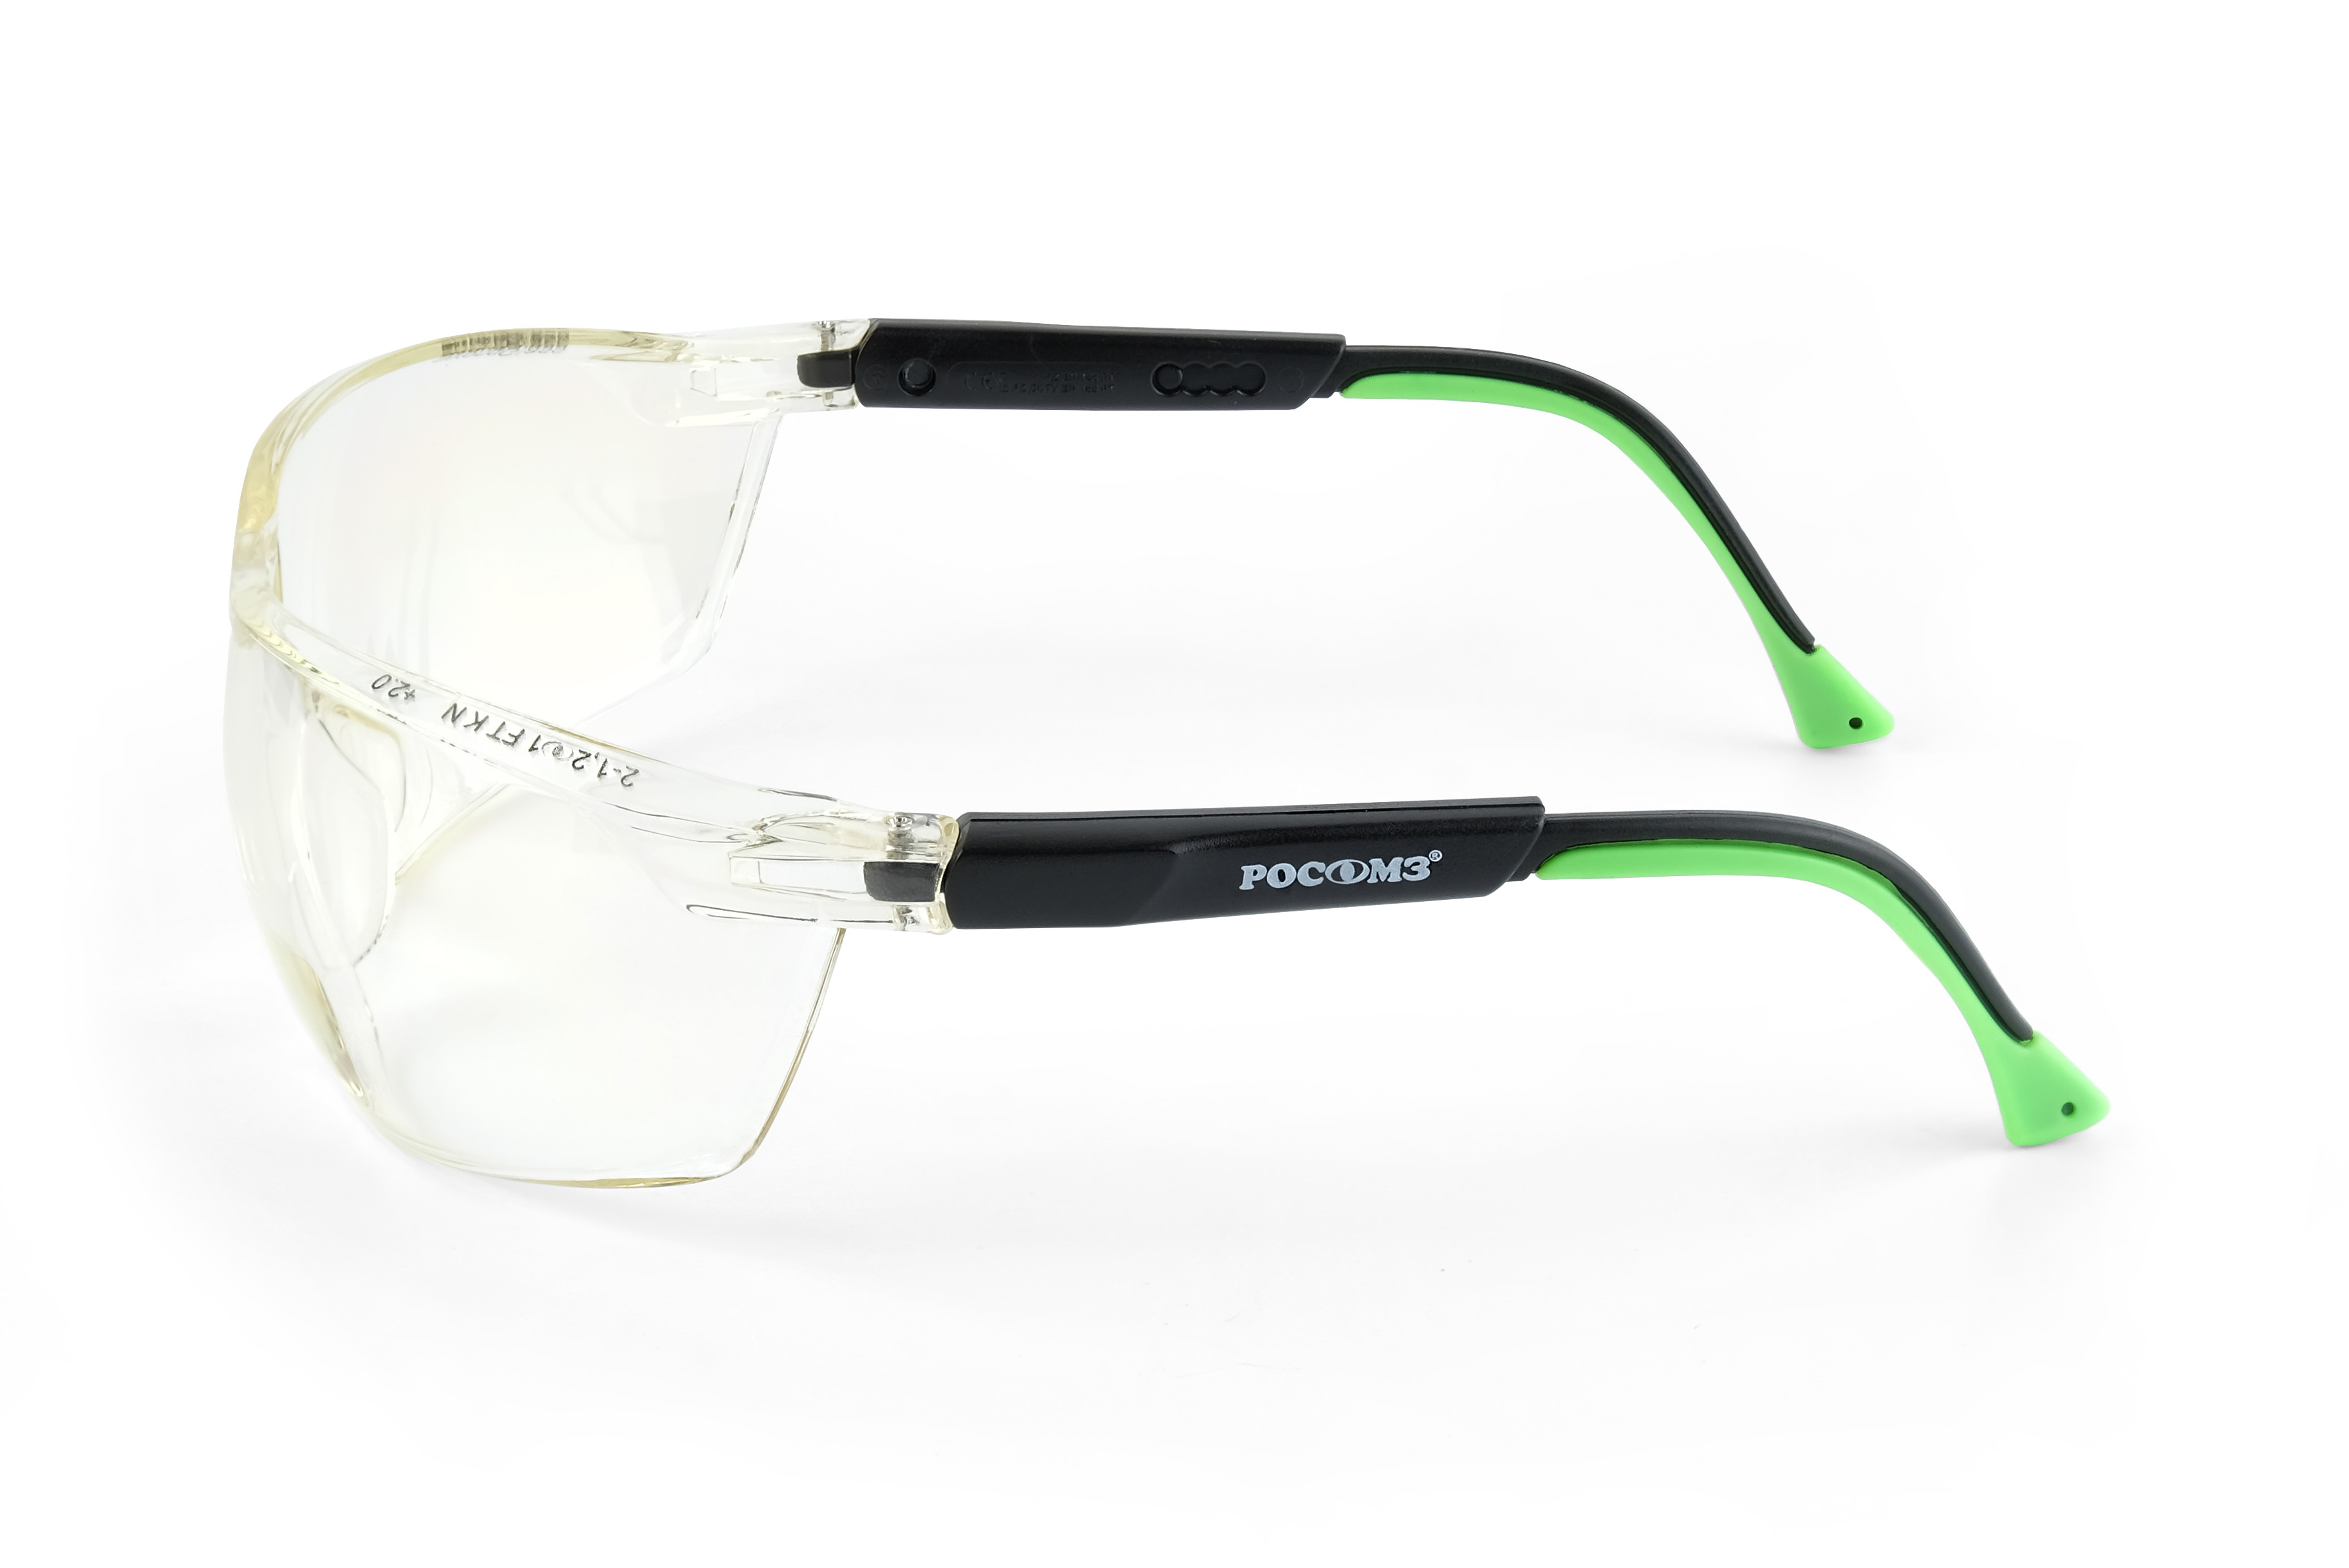 О78 АБСОЛЮТ plus Strong Glass (2-1,2 РС) очки защитные открытые (рефракция +2, 0 дптр)